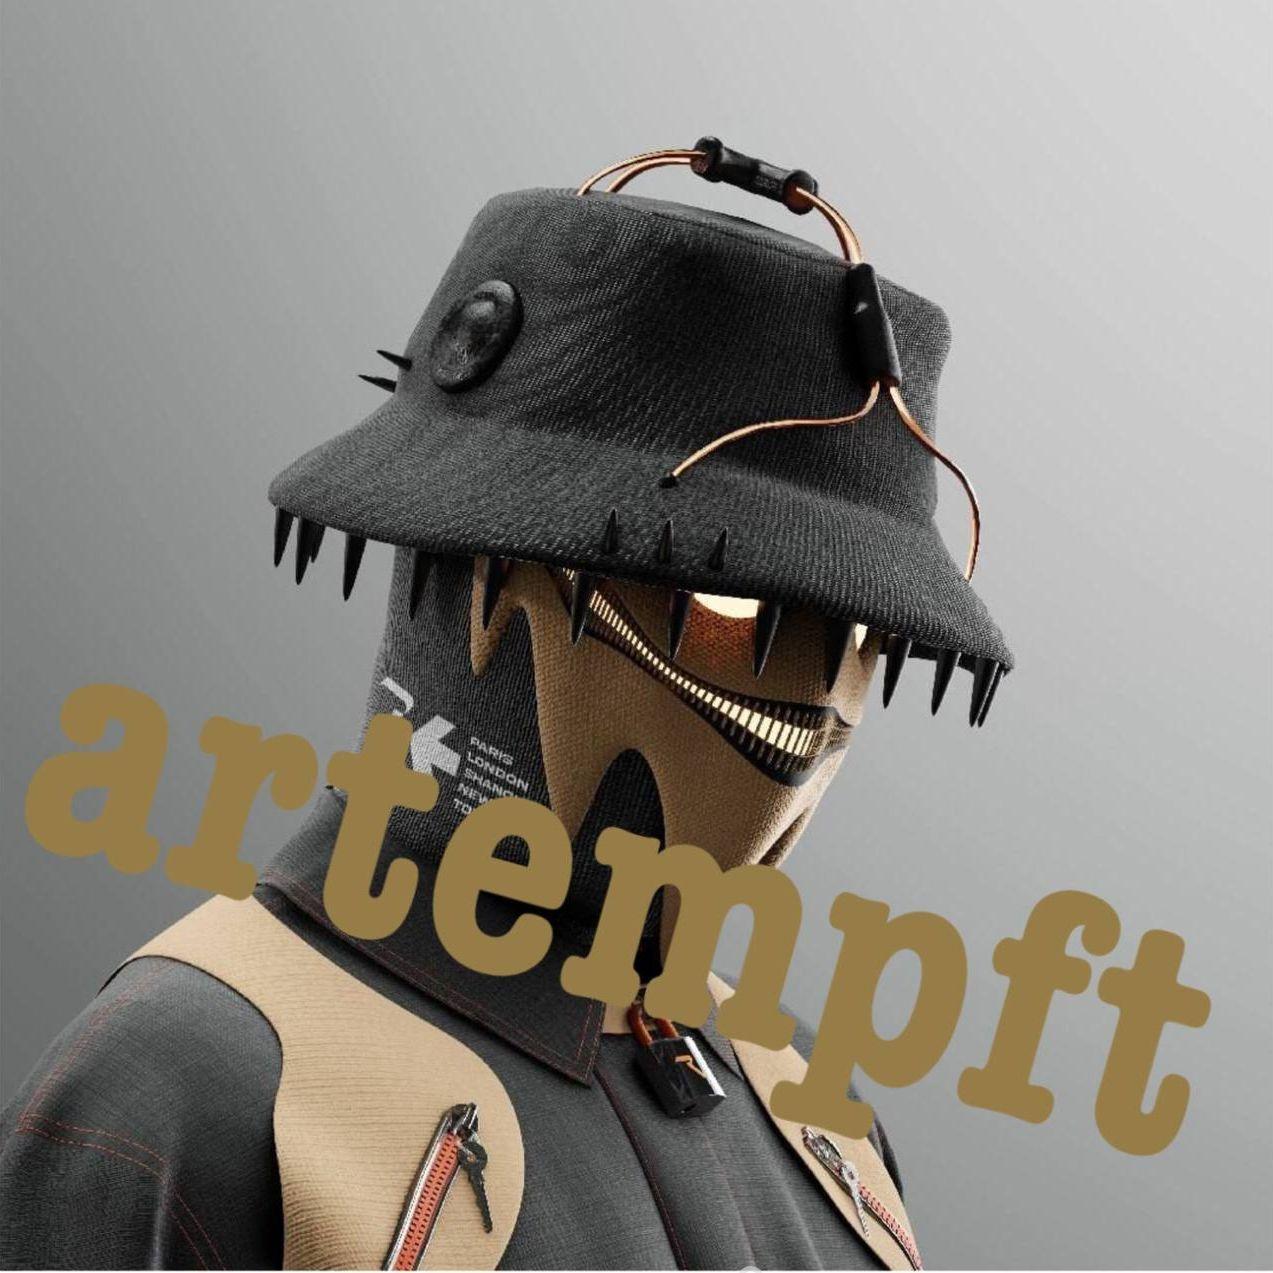 Player artempft avatar